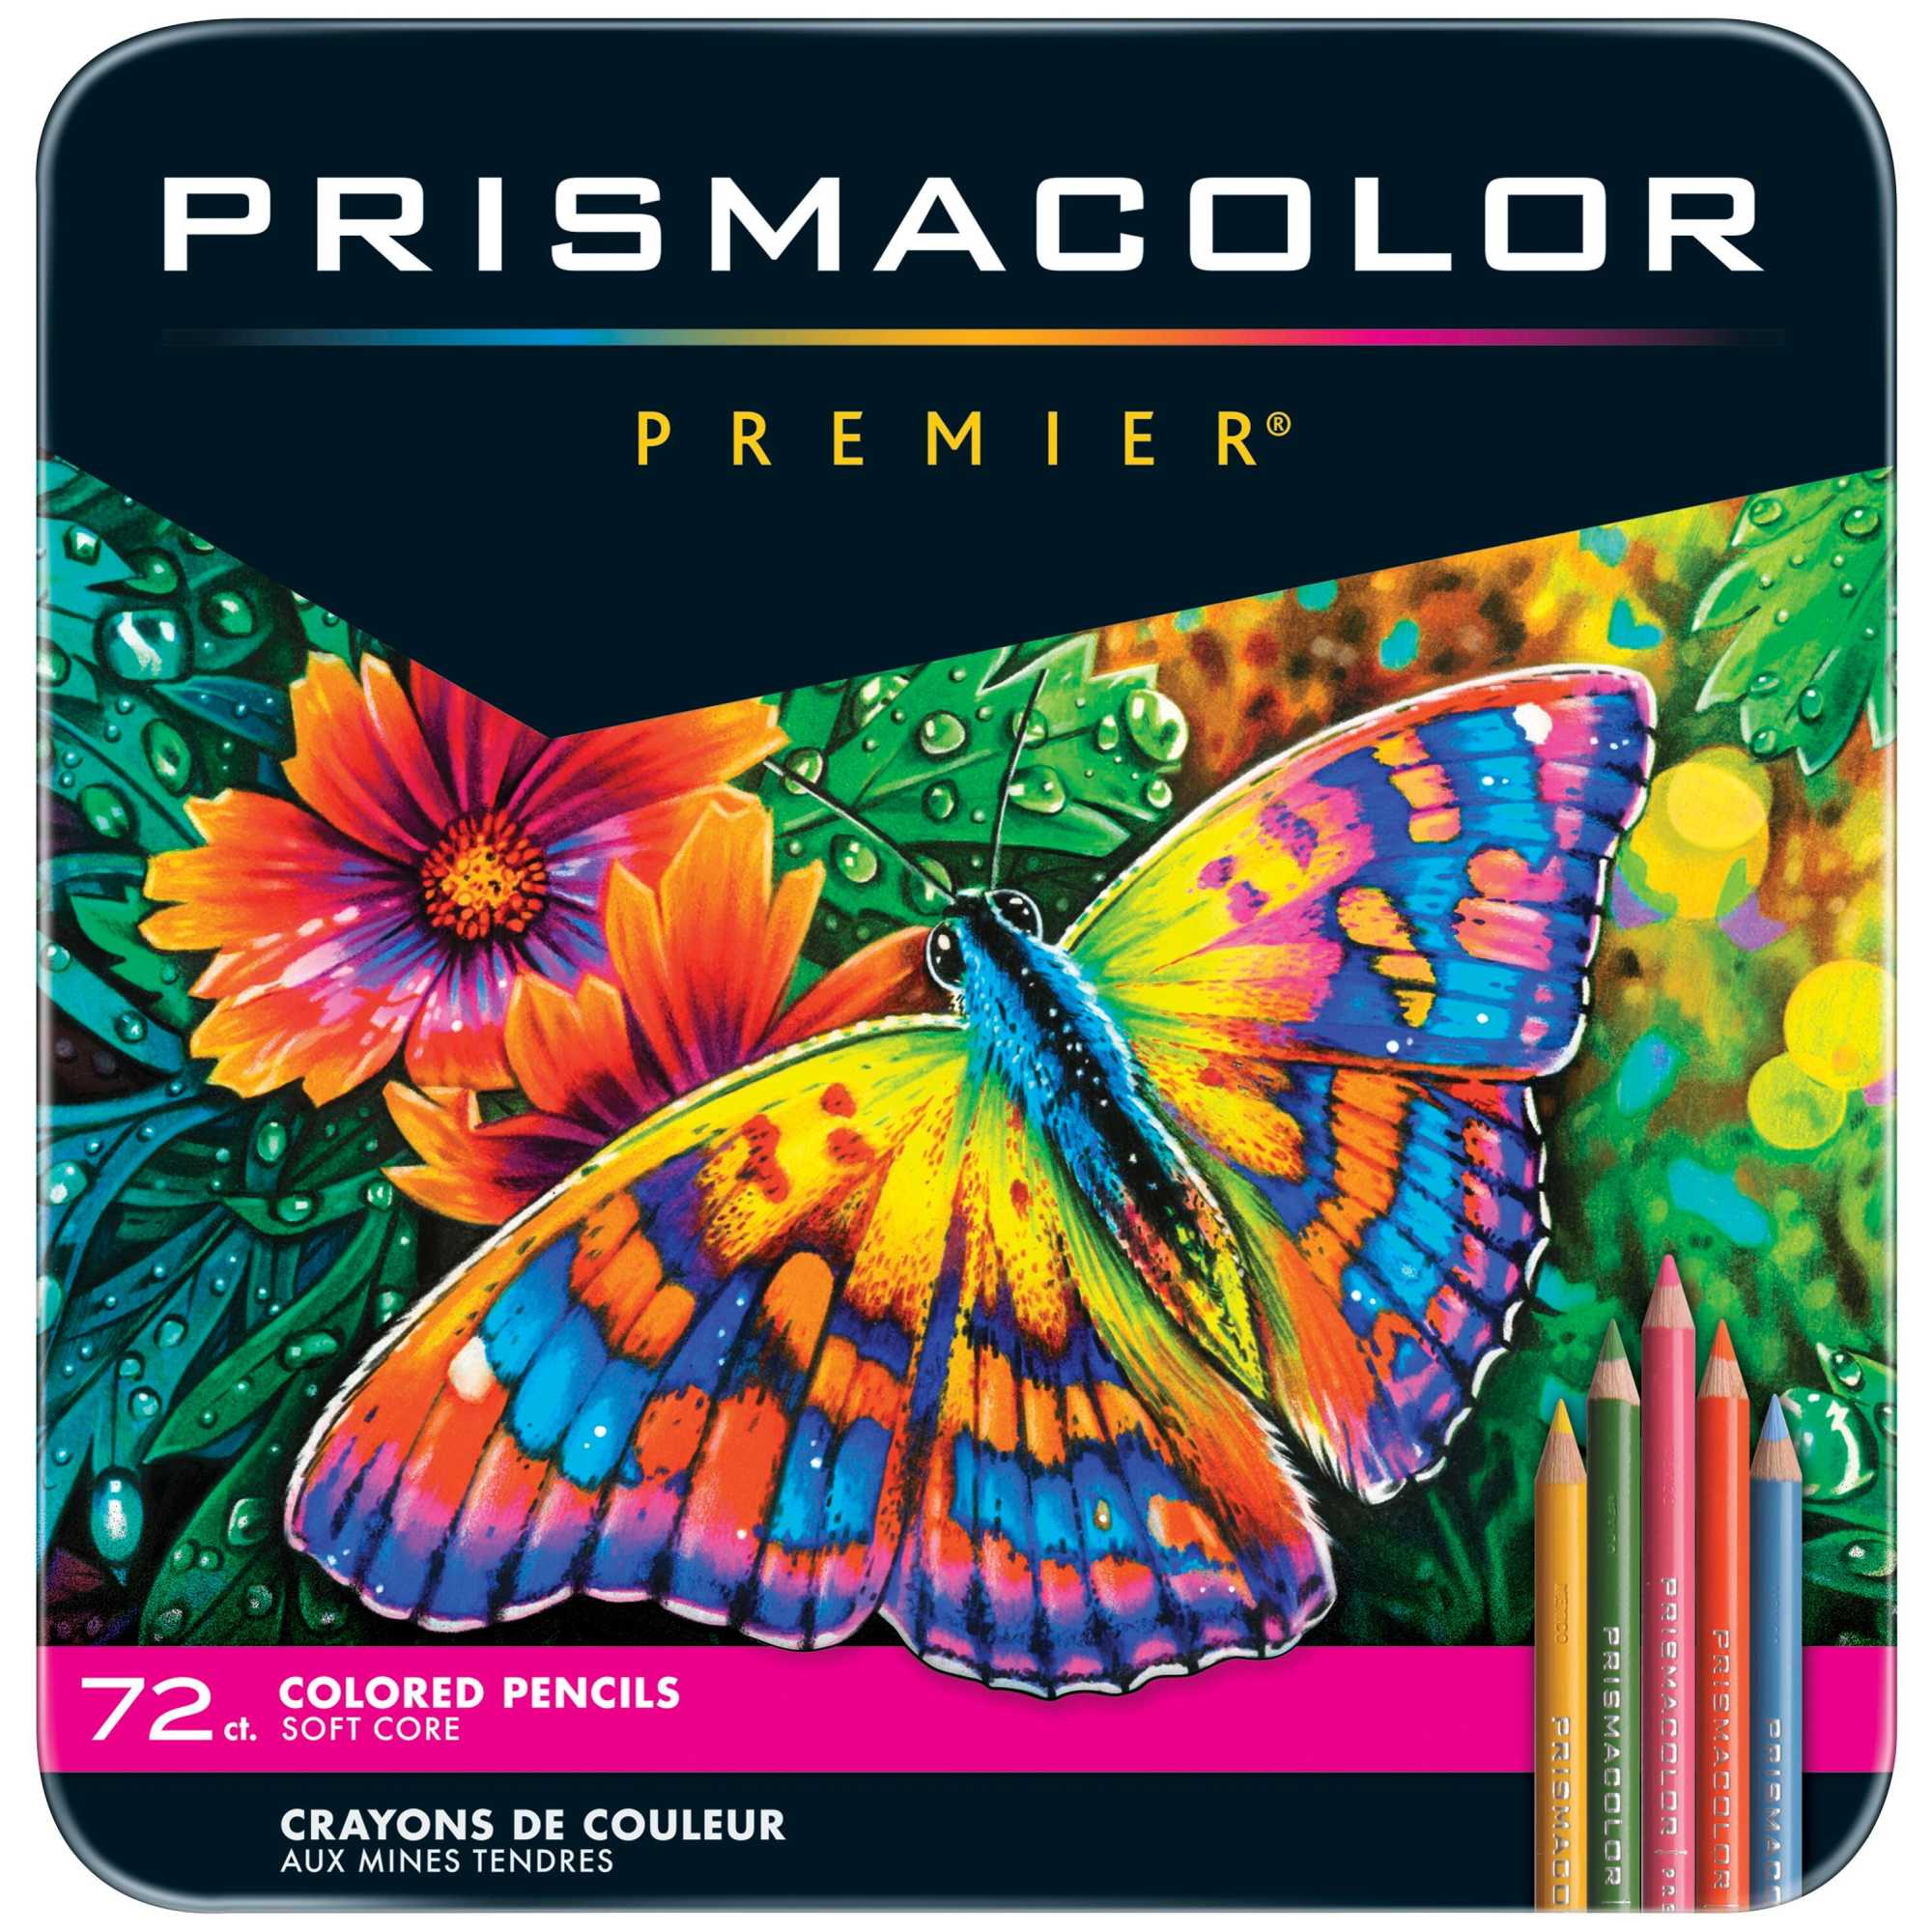 Prismacolor Premier Soft Core Colored Pencils, Assorted Colors, Set of 72 - image 1 of 5